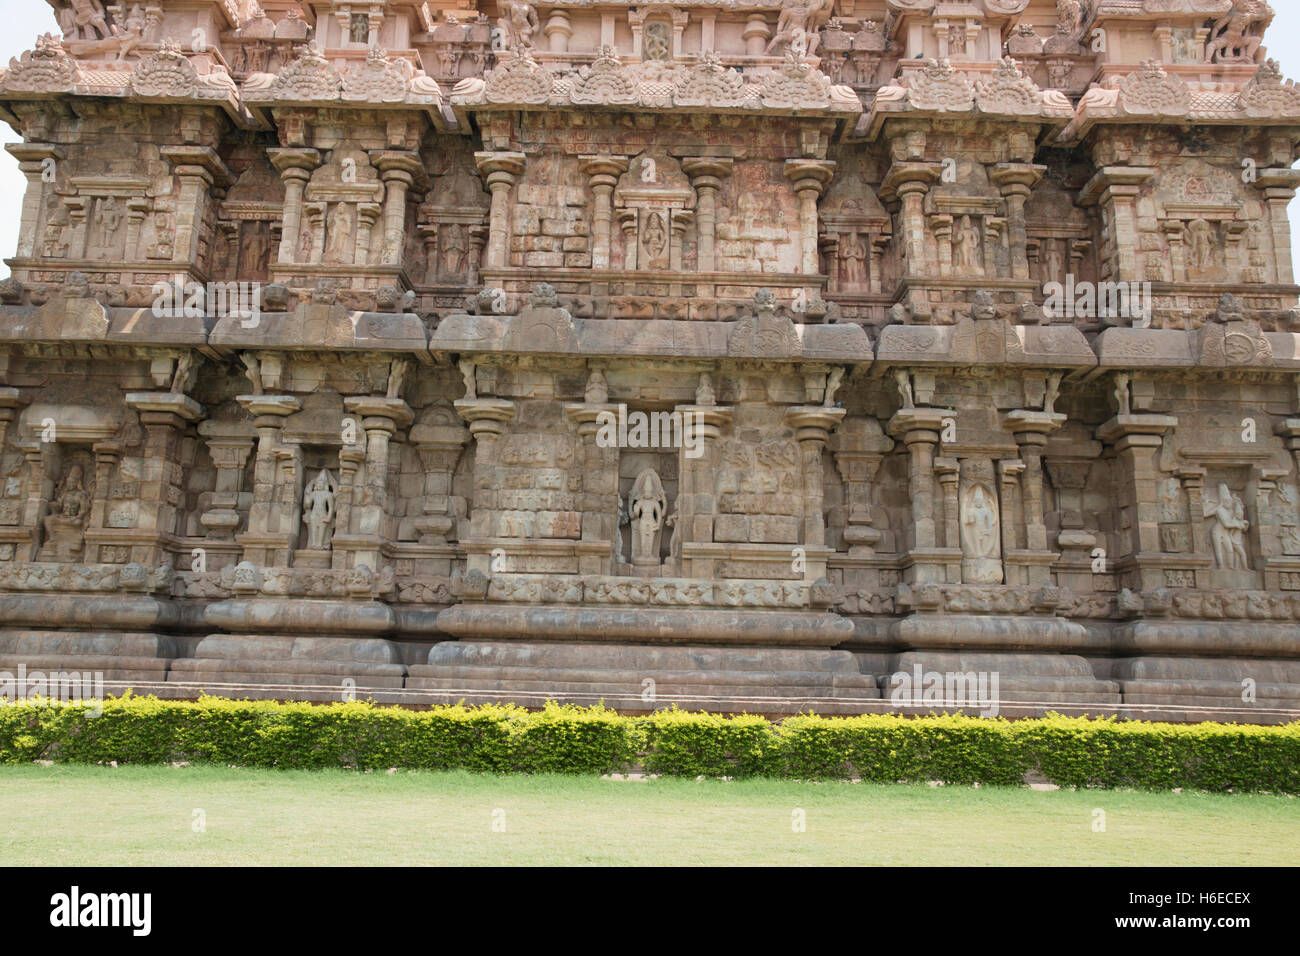 Niches de la paroi ouest, Temple de Brihadisvara, Gangaikondacholapuram, Tamil Nadu, Inde. Vue depuis l'Ouest. Banque D'Images